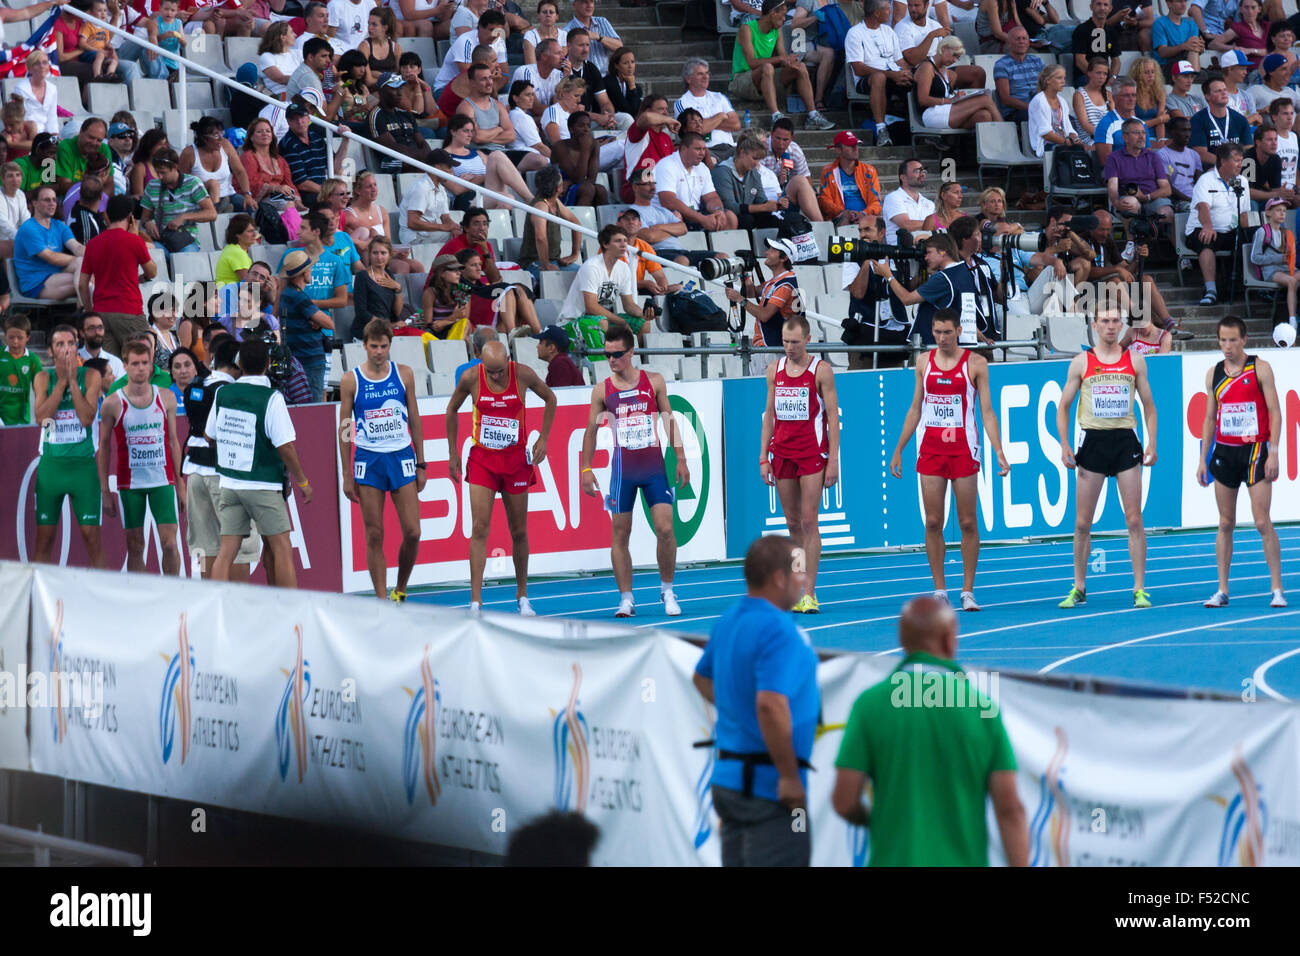 110m Ostacoli evento durante il ventesimo Campionato Europeo di Atletica presso lo Stadio Olimpico sul 2010 a Barcellona, Spagna Foto Stock